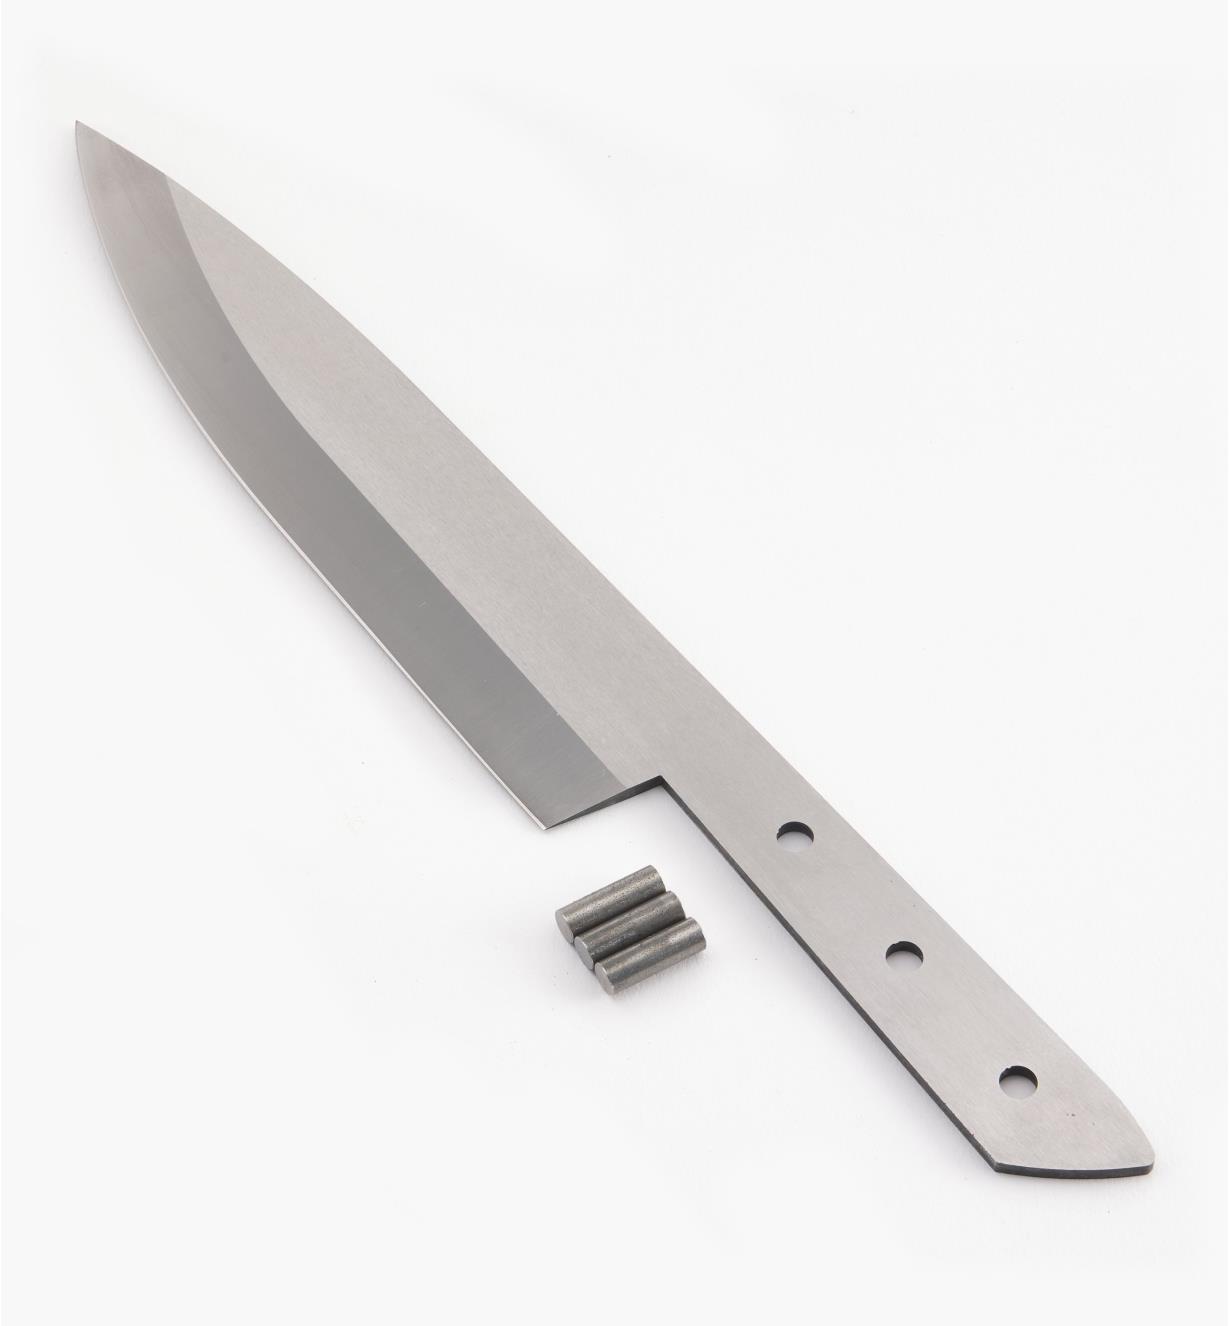 19P2452 - 1/8" × 8" Chef's Knife Kit